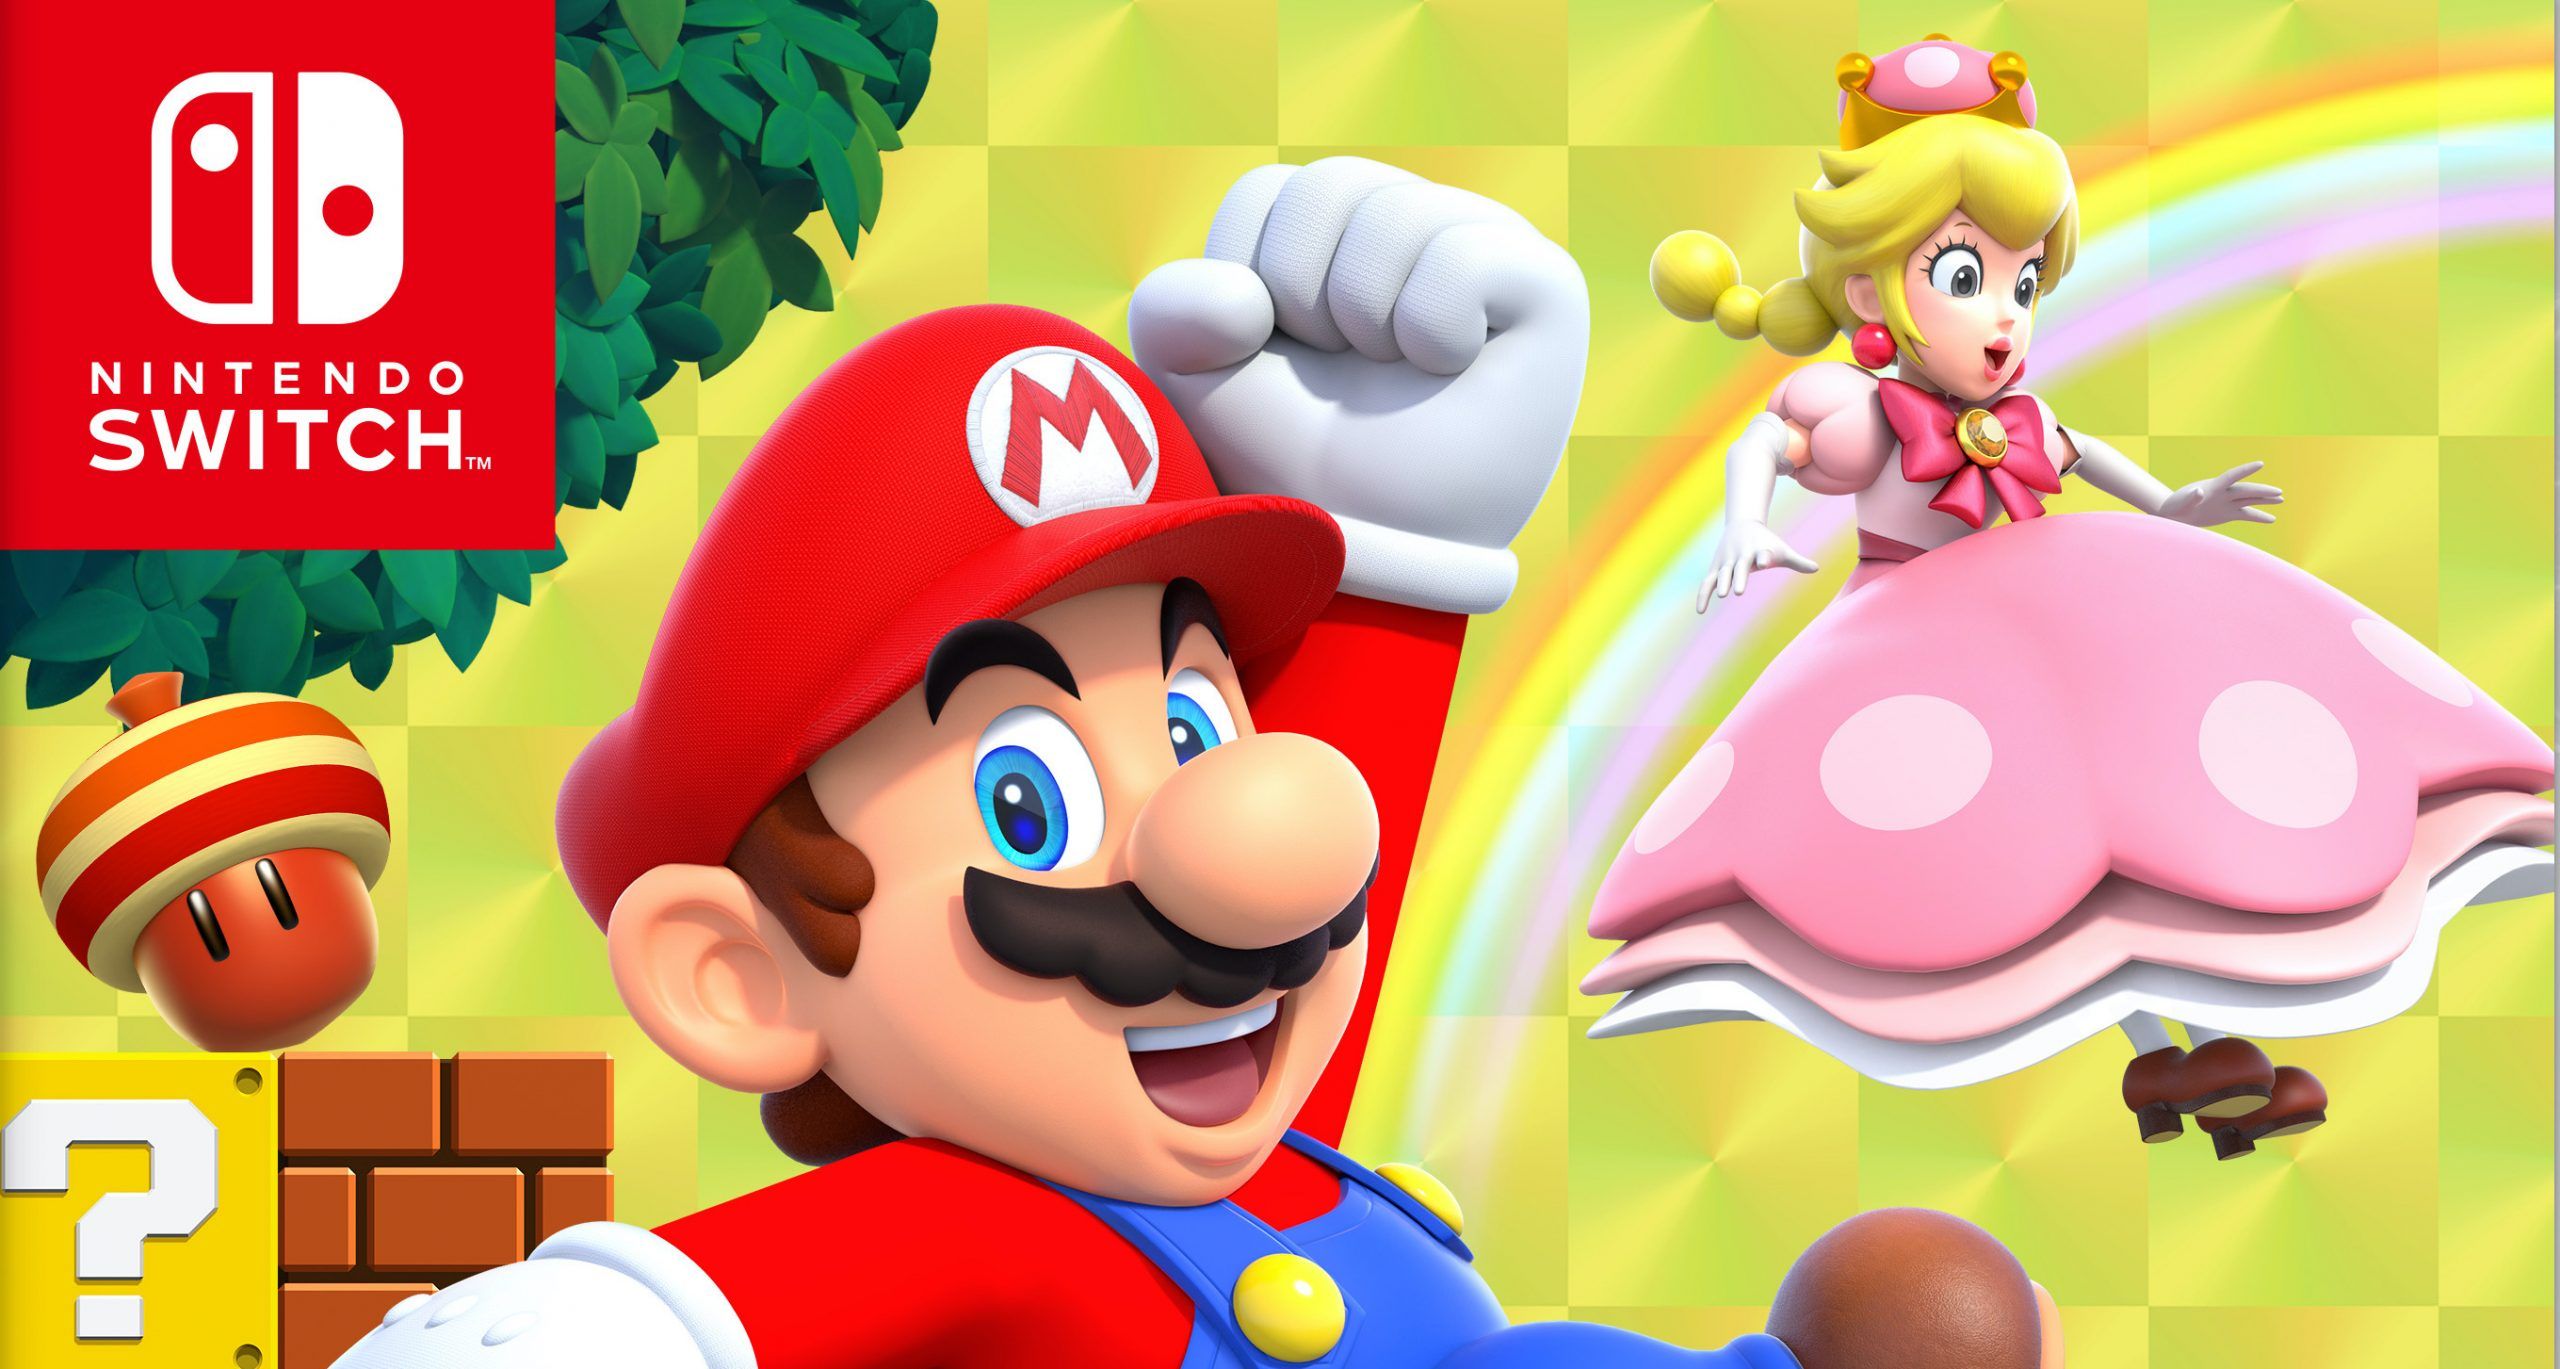 Mario deluxe nintendo. Super Mario Bros Nintendo Switch. New super Mario Bros u Deluxe Nintendo Switch. New super Mario Bros. U Deluxe. New super Mario Bros u Deluxe Nintendo Switch купить.